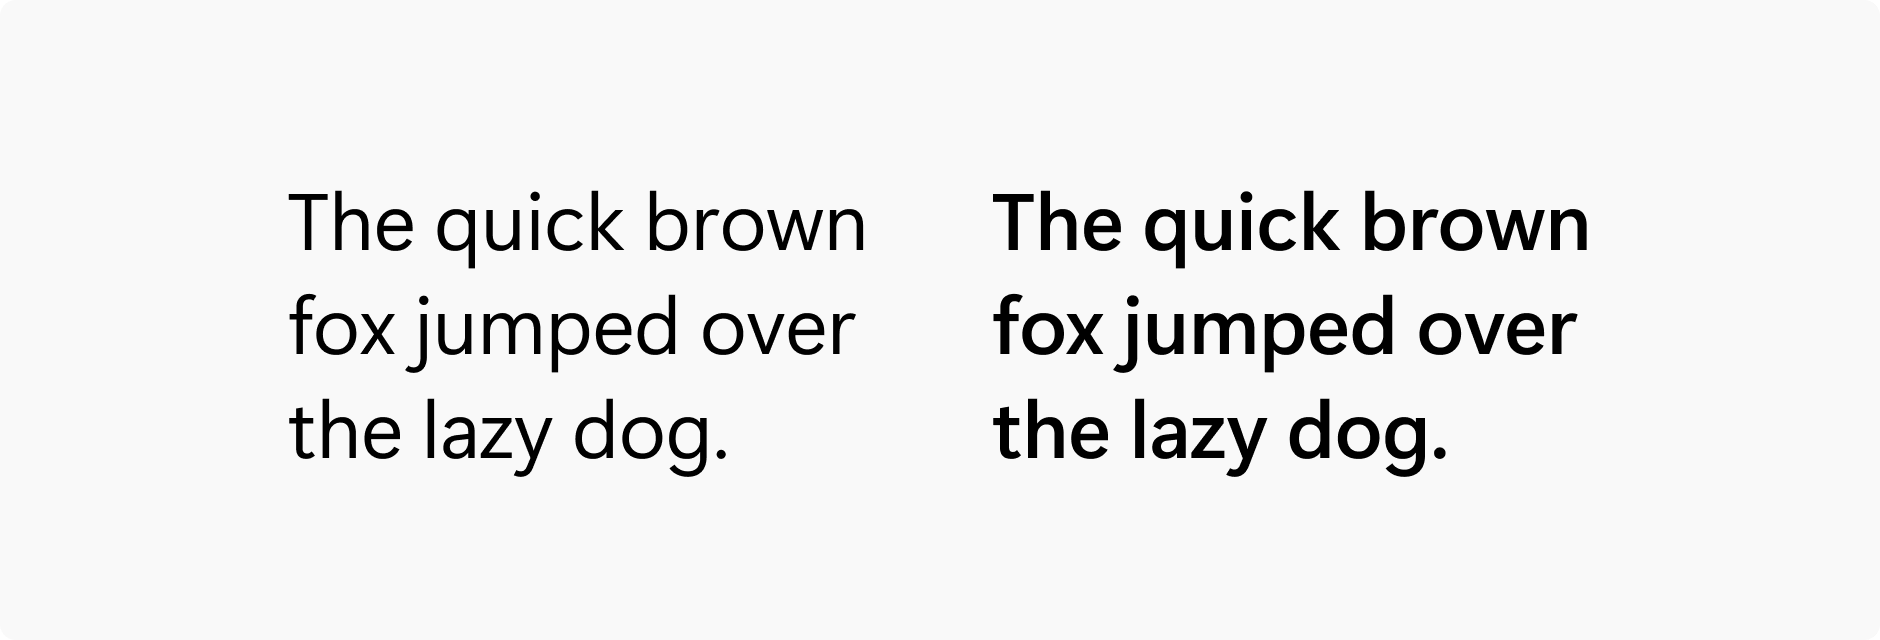 并排的两串短语“The quick brown fox jumped over the lazy dog”。右侧的短语采用了较粗的字体粗细。